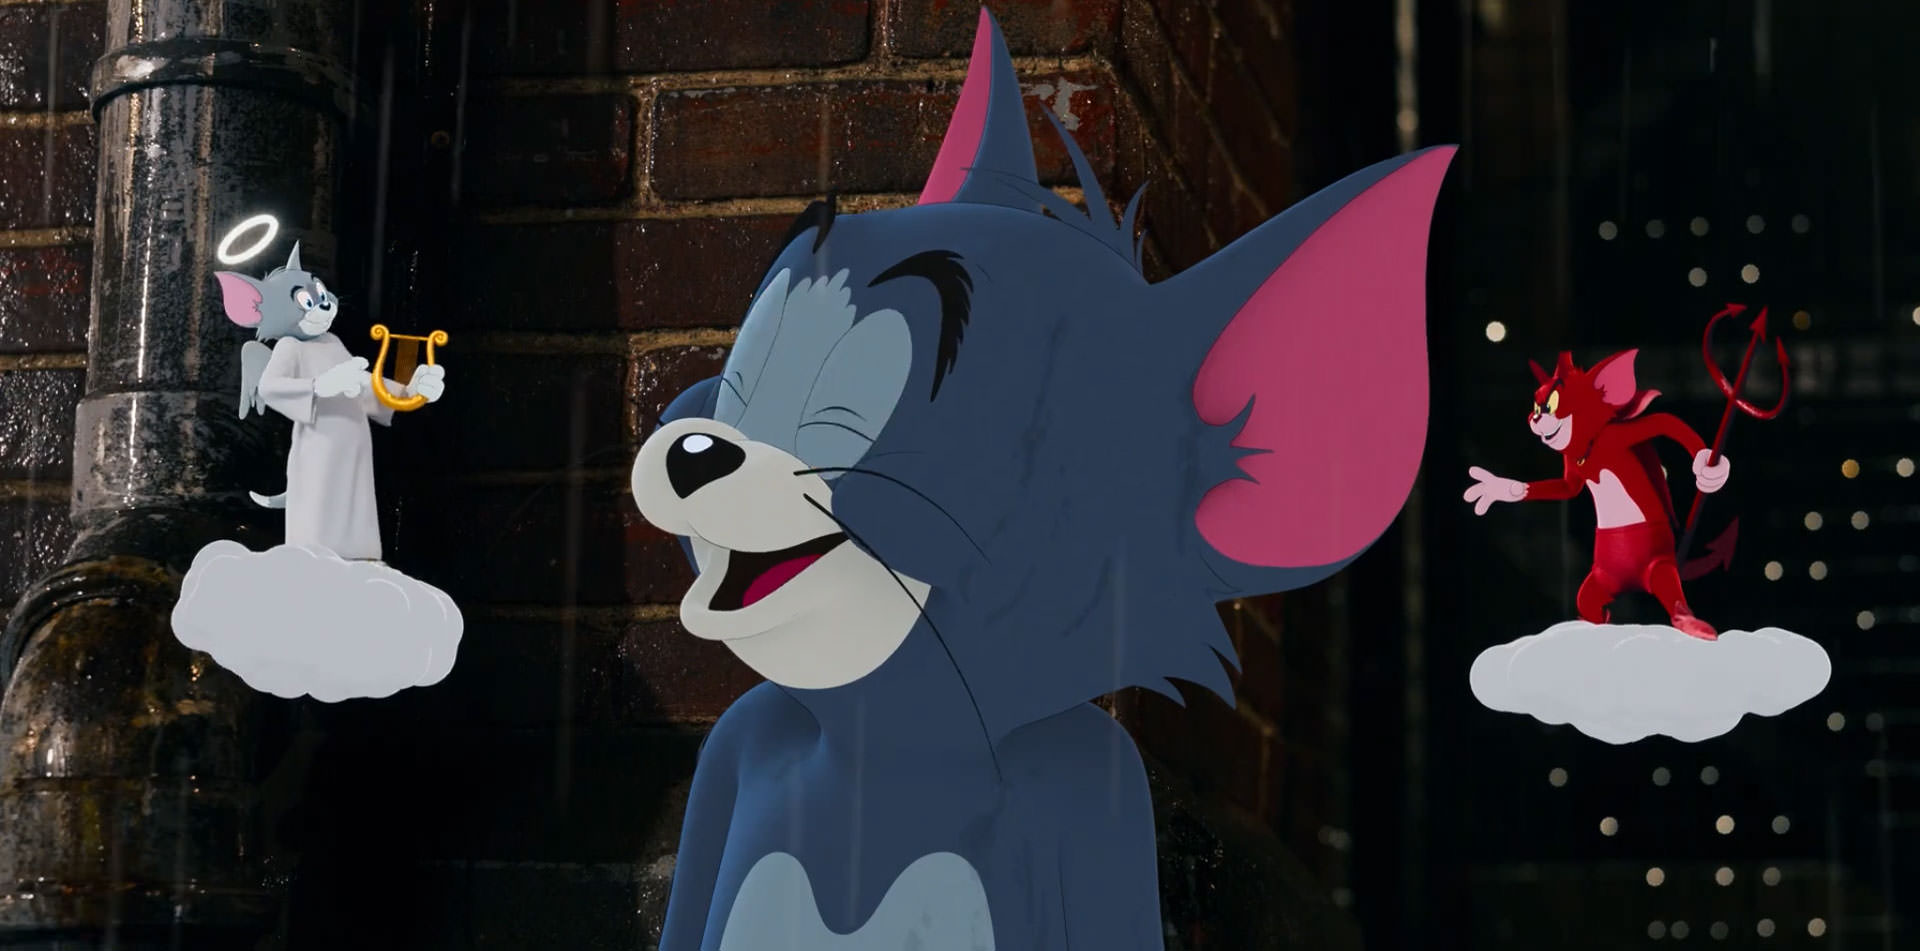 لبخند مسخره تام موقع گوش دادن به فرشته خوب در فیلم Tom and Jerry سال ۲۰۲۱ میلادی